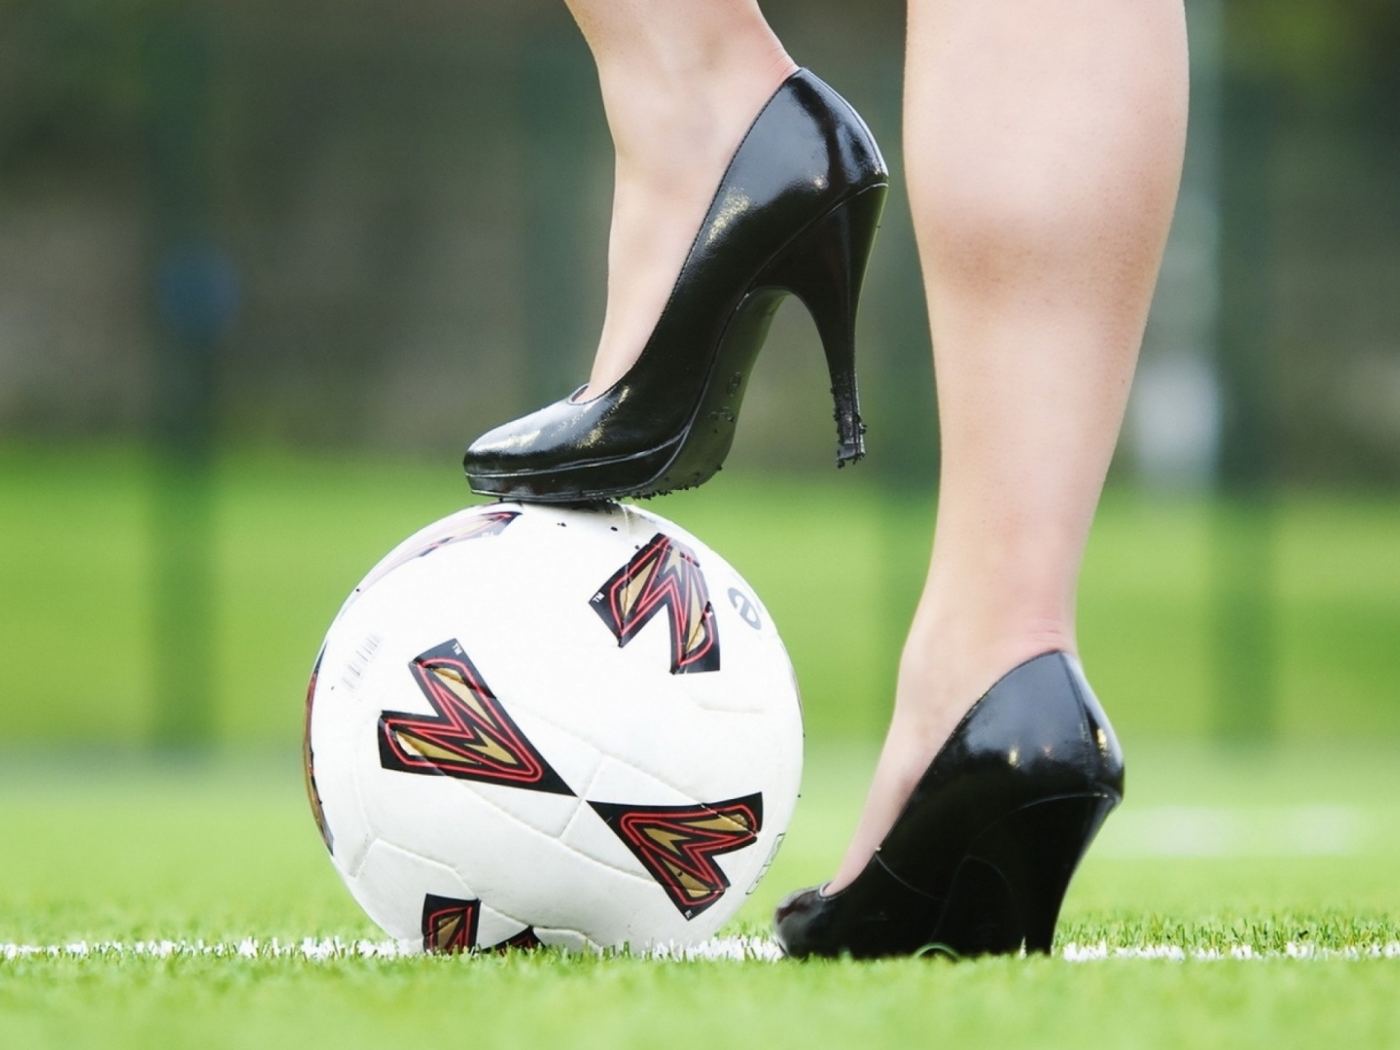 газон, футбольный мяч, девушка в туфлях